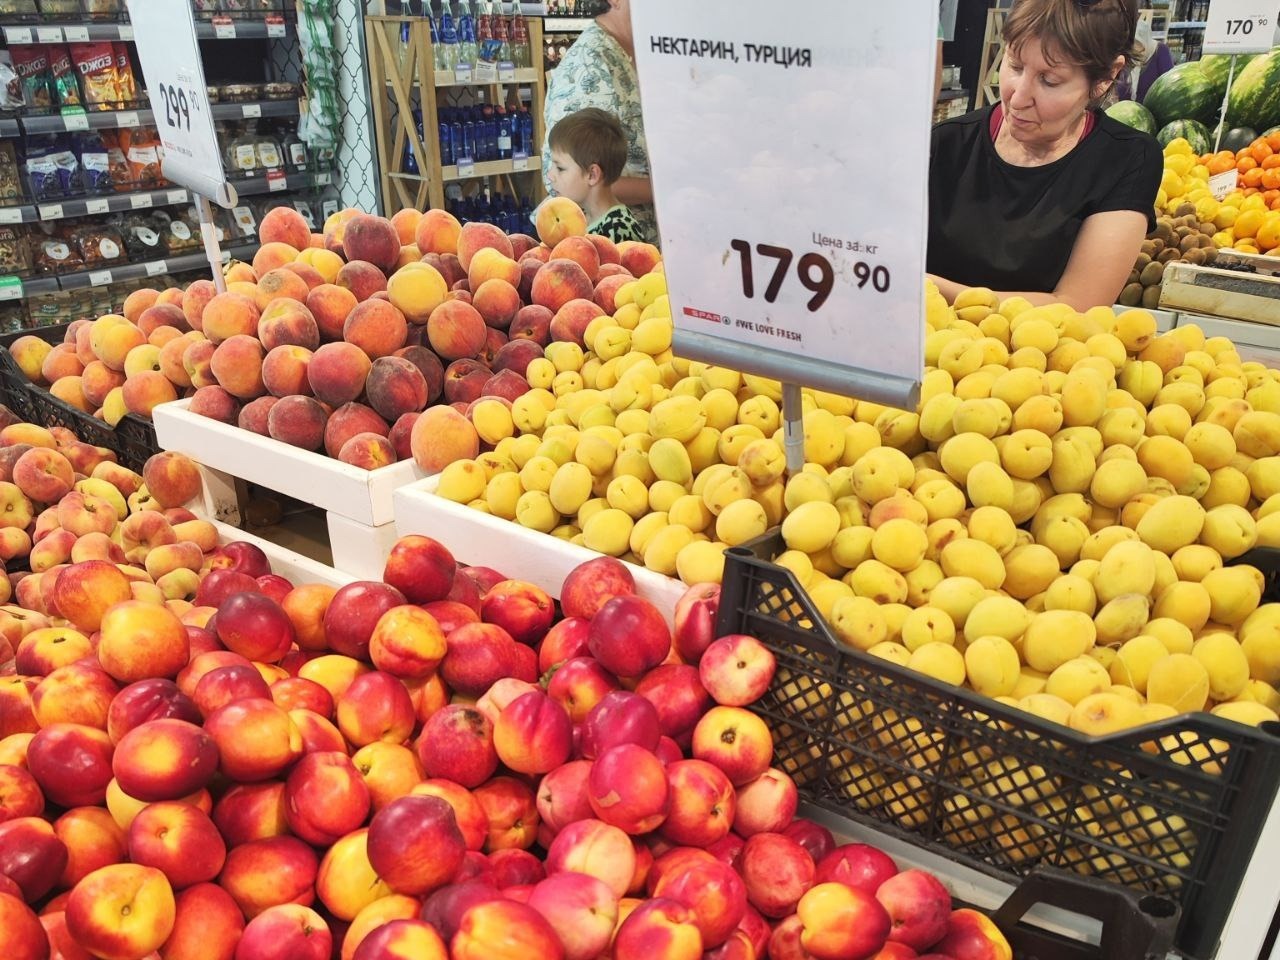 Сколько стоят овощи и фрукты в магазинах Нижнего Новгорода